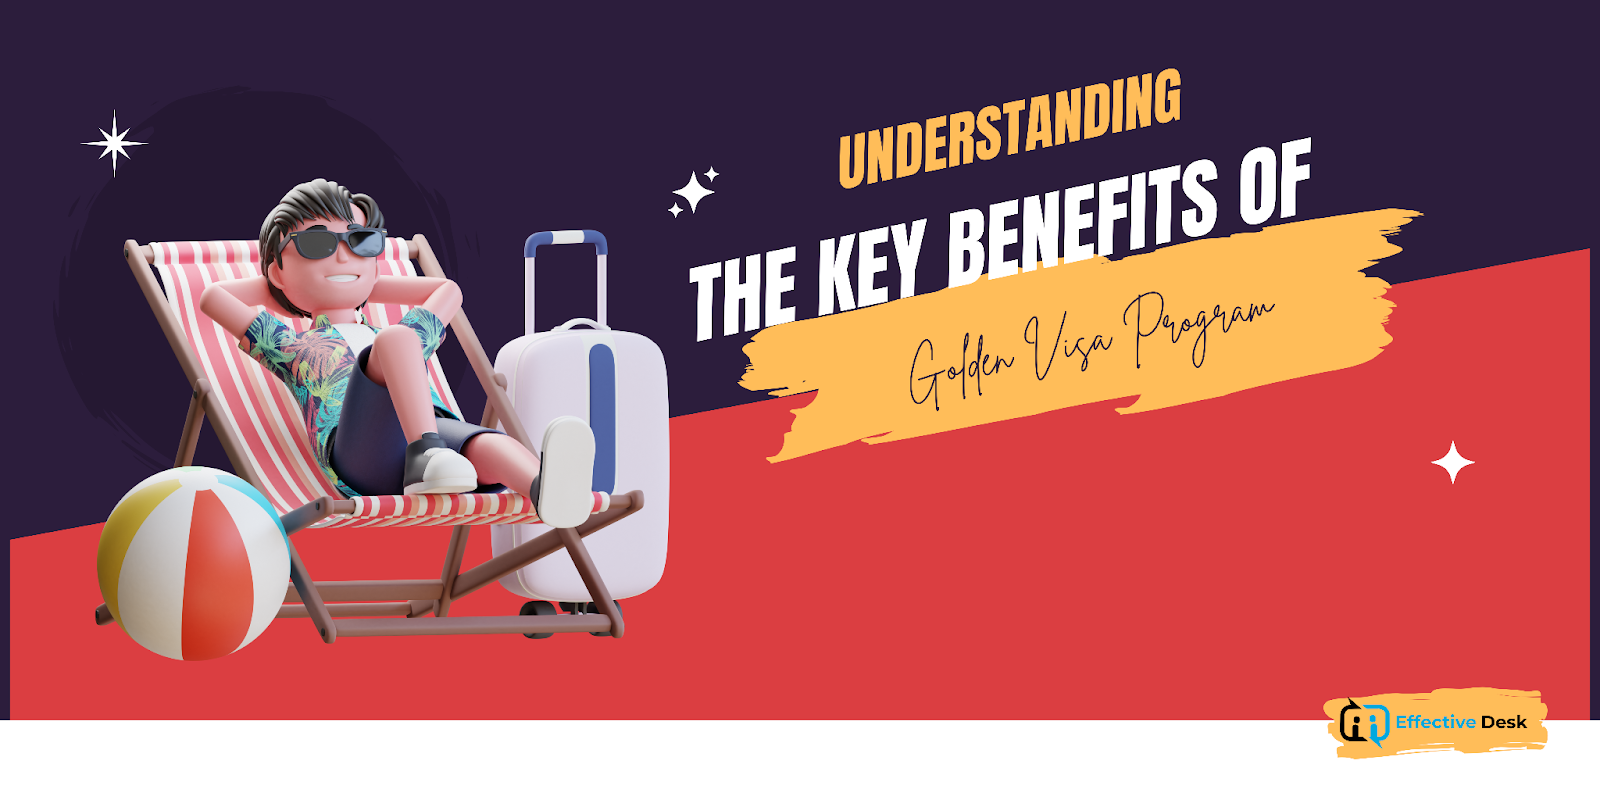 Understanding the Key Benefits of Dubai's Golden Visa Program
